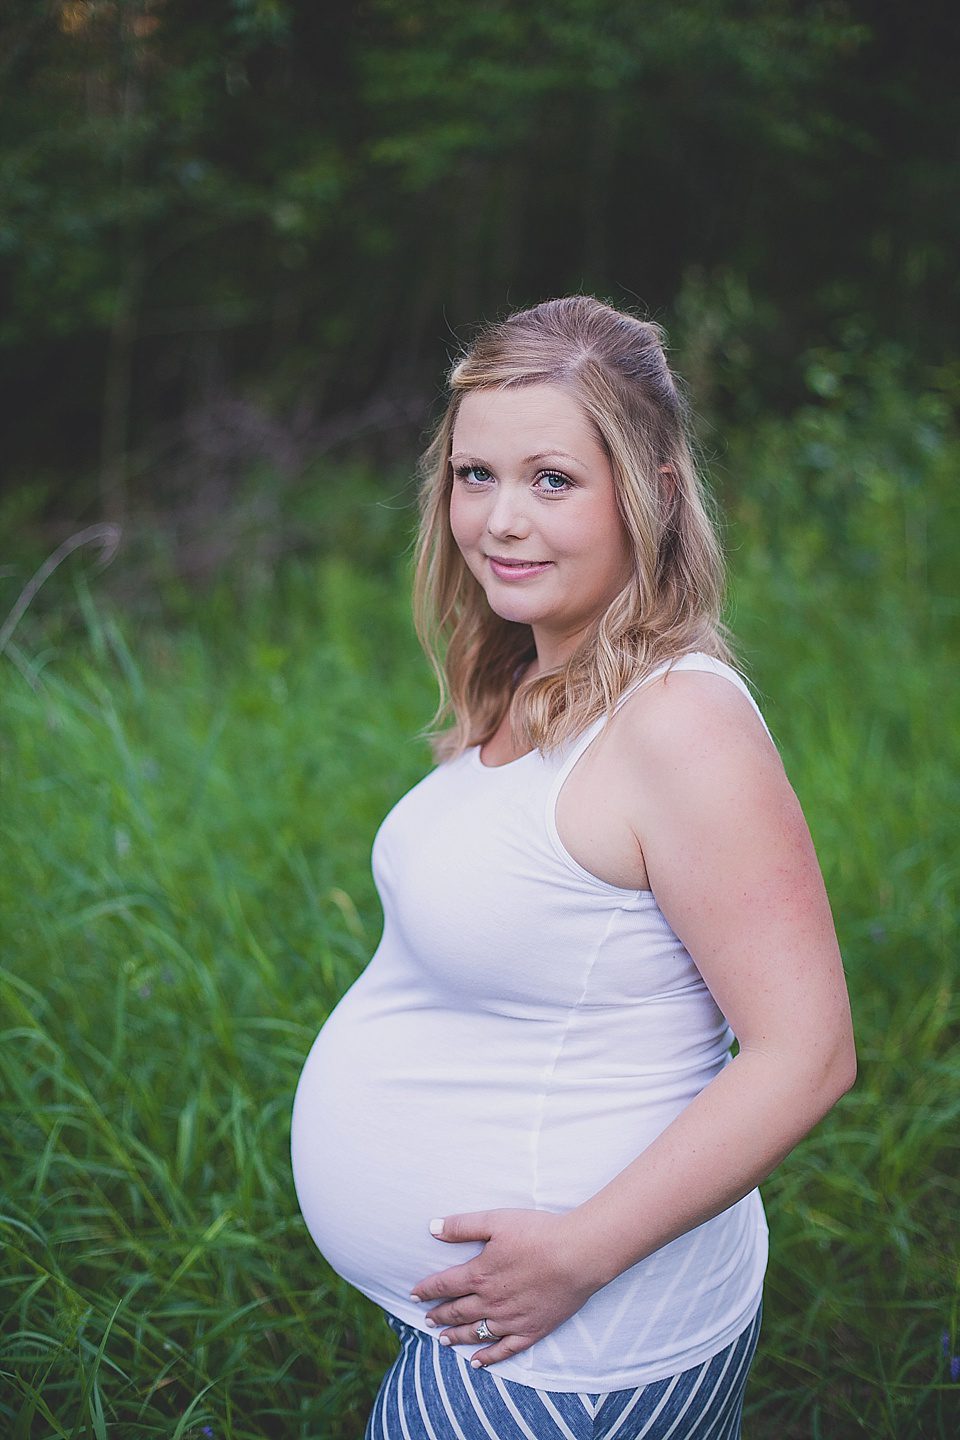 Edmonton Maternity Photographer, Edmonton Newborn Photographer